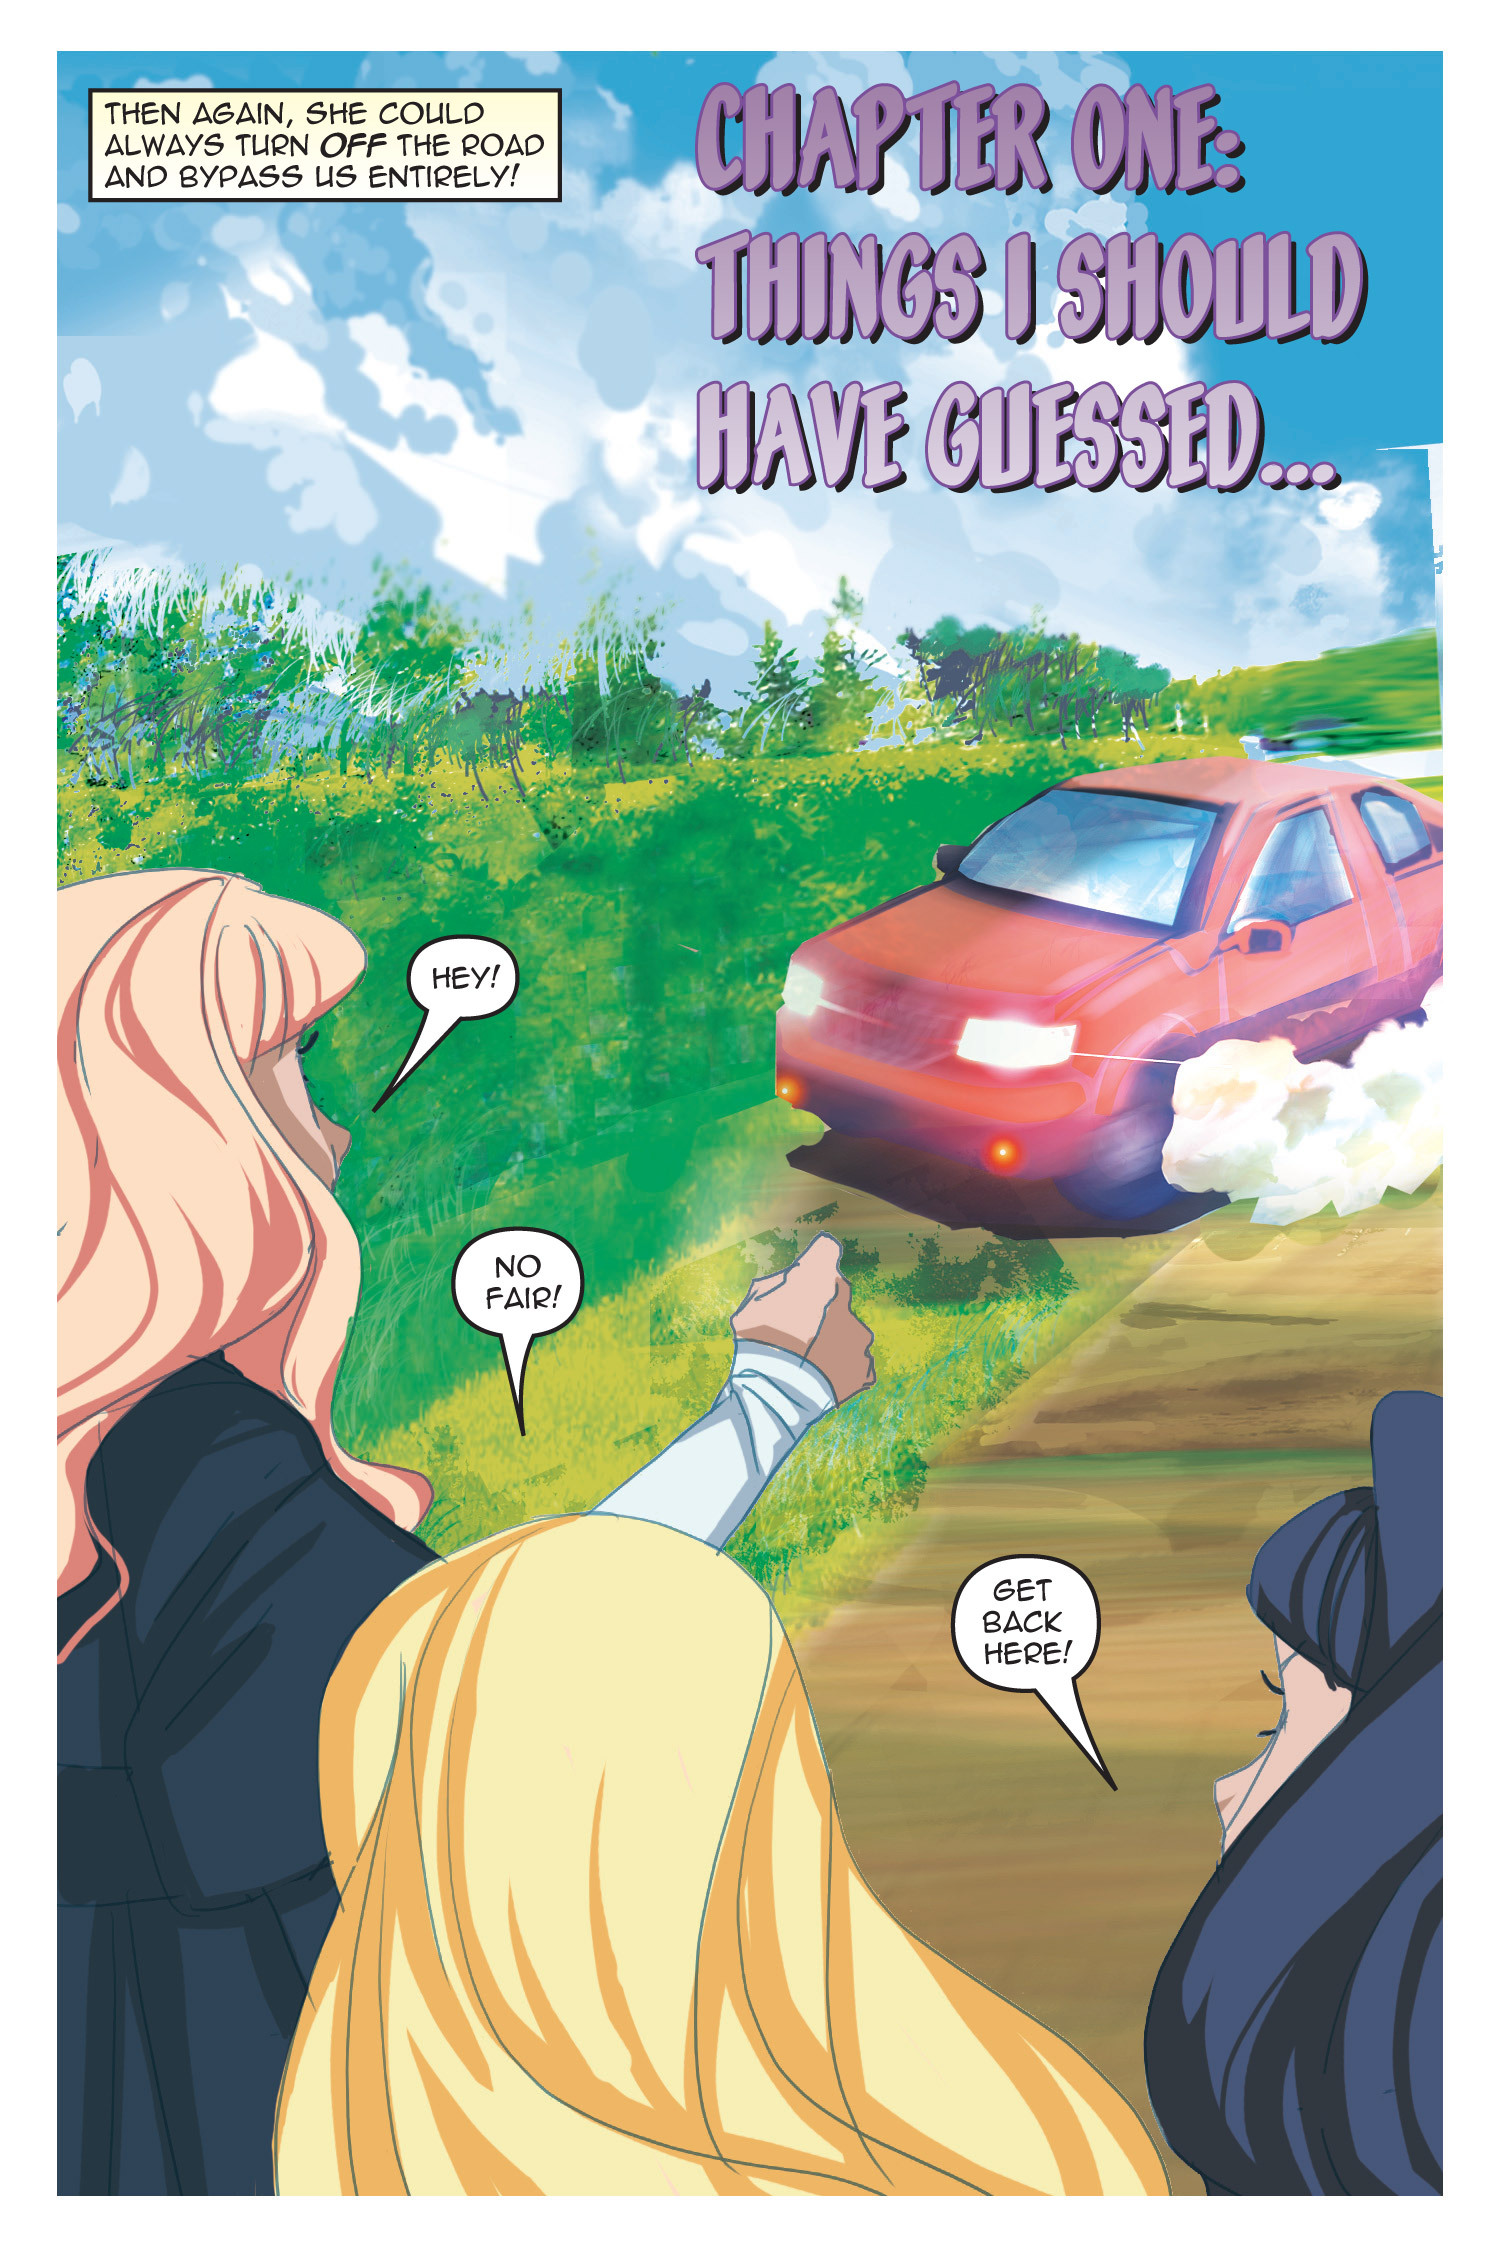 Read online Nancy Drew comic -  Issue #20 - 81